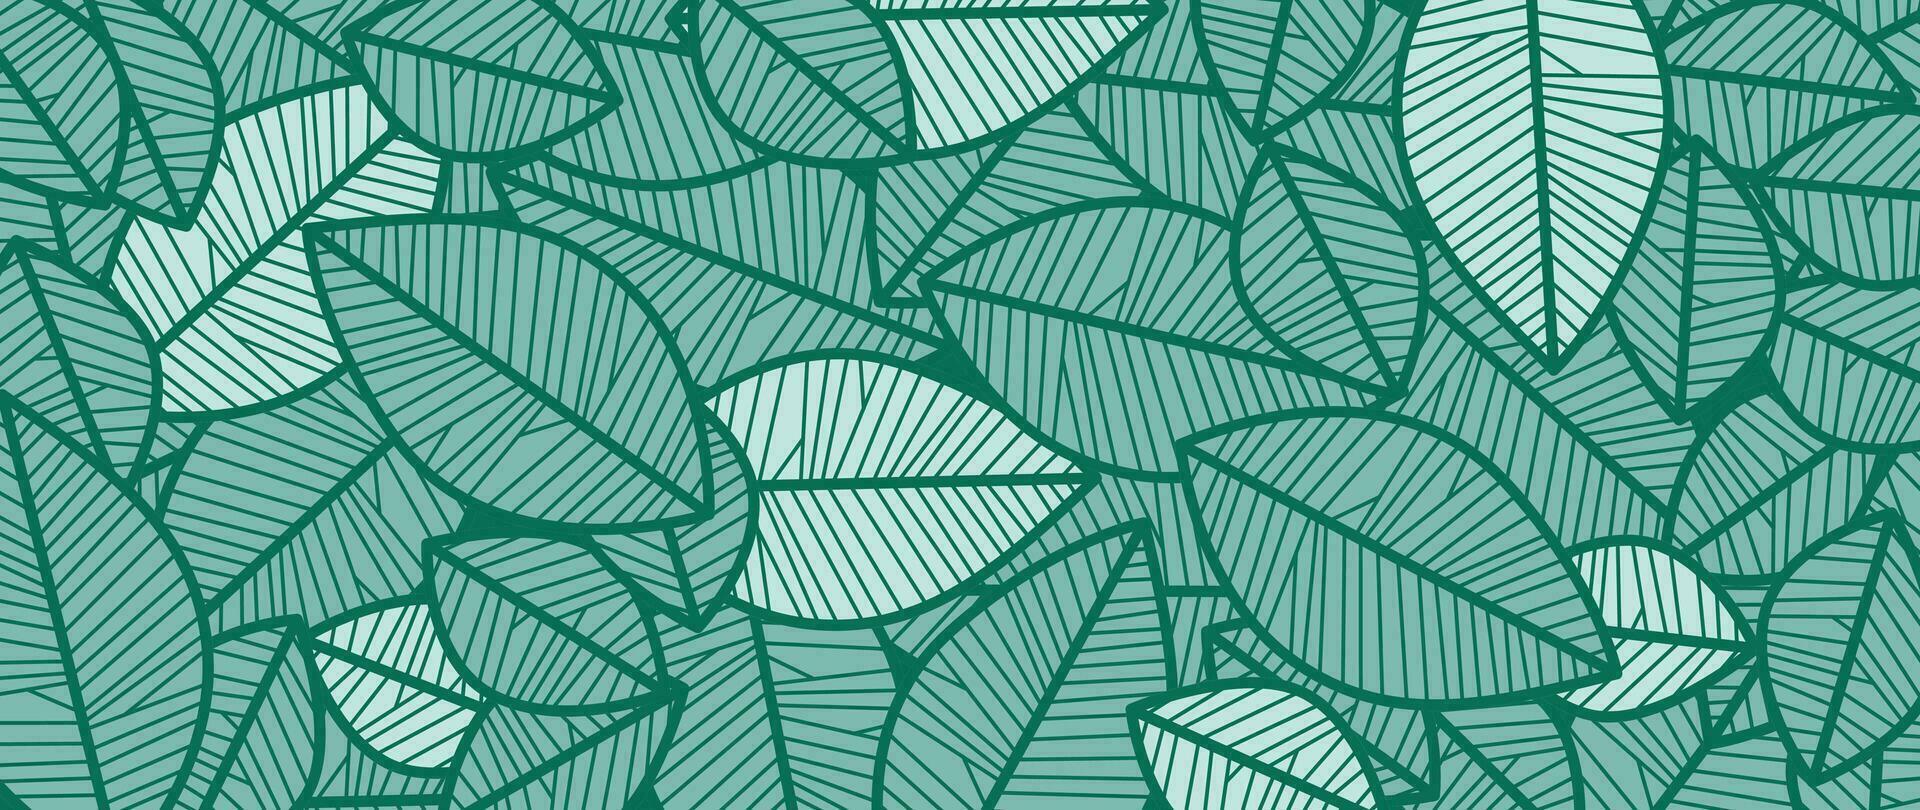 abstrakt lövverk linje konst vektor bakgrund. blad tapet av tropisk löv, blad gren, växter i hand dragen mönster. botanisk djungel illustrerade för baner, grafik, dekoration, tyg.